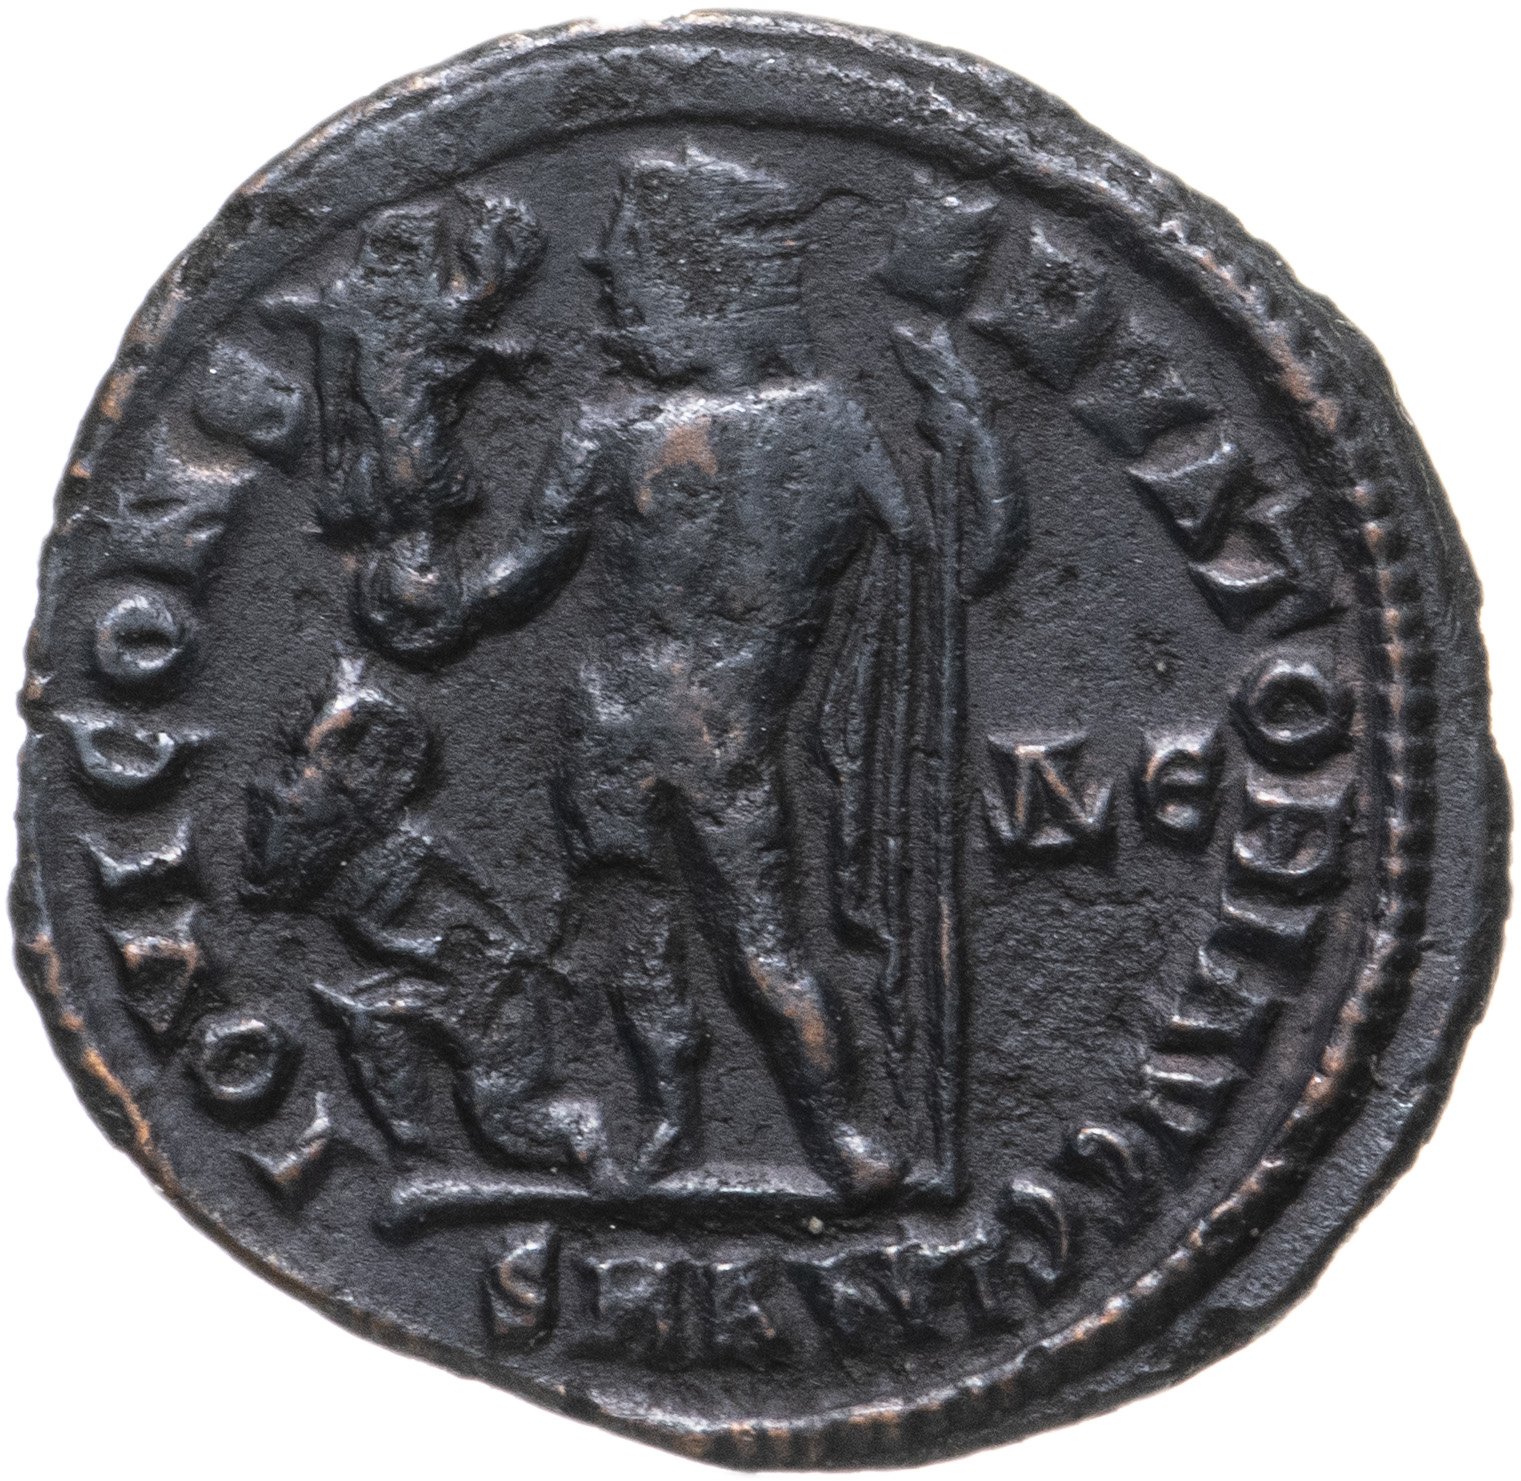 Римский фоллис Лициний i (265-324). Нуммий монета. АВЛ Лициний нерва Силиан монеты. Монеты Лициния. Квинт лициний 4